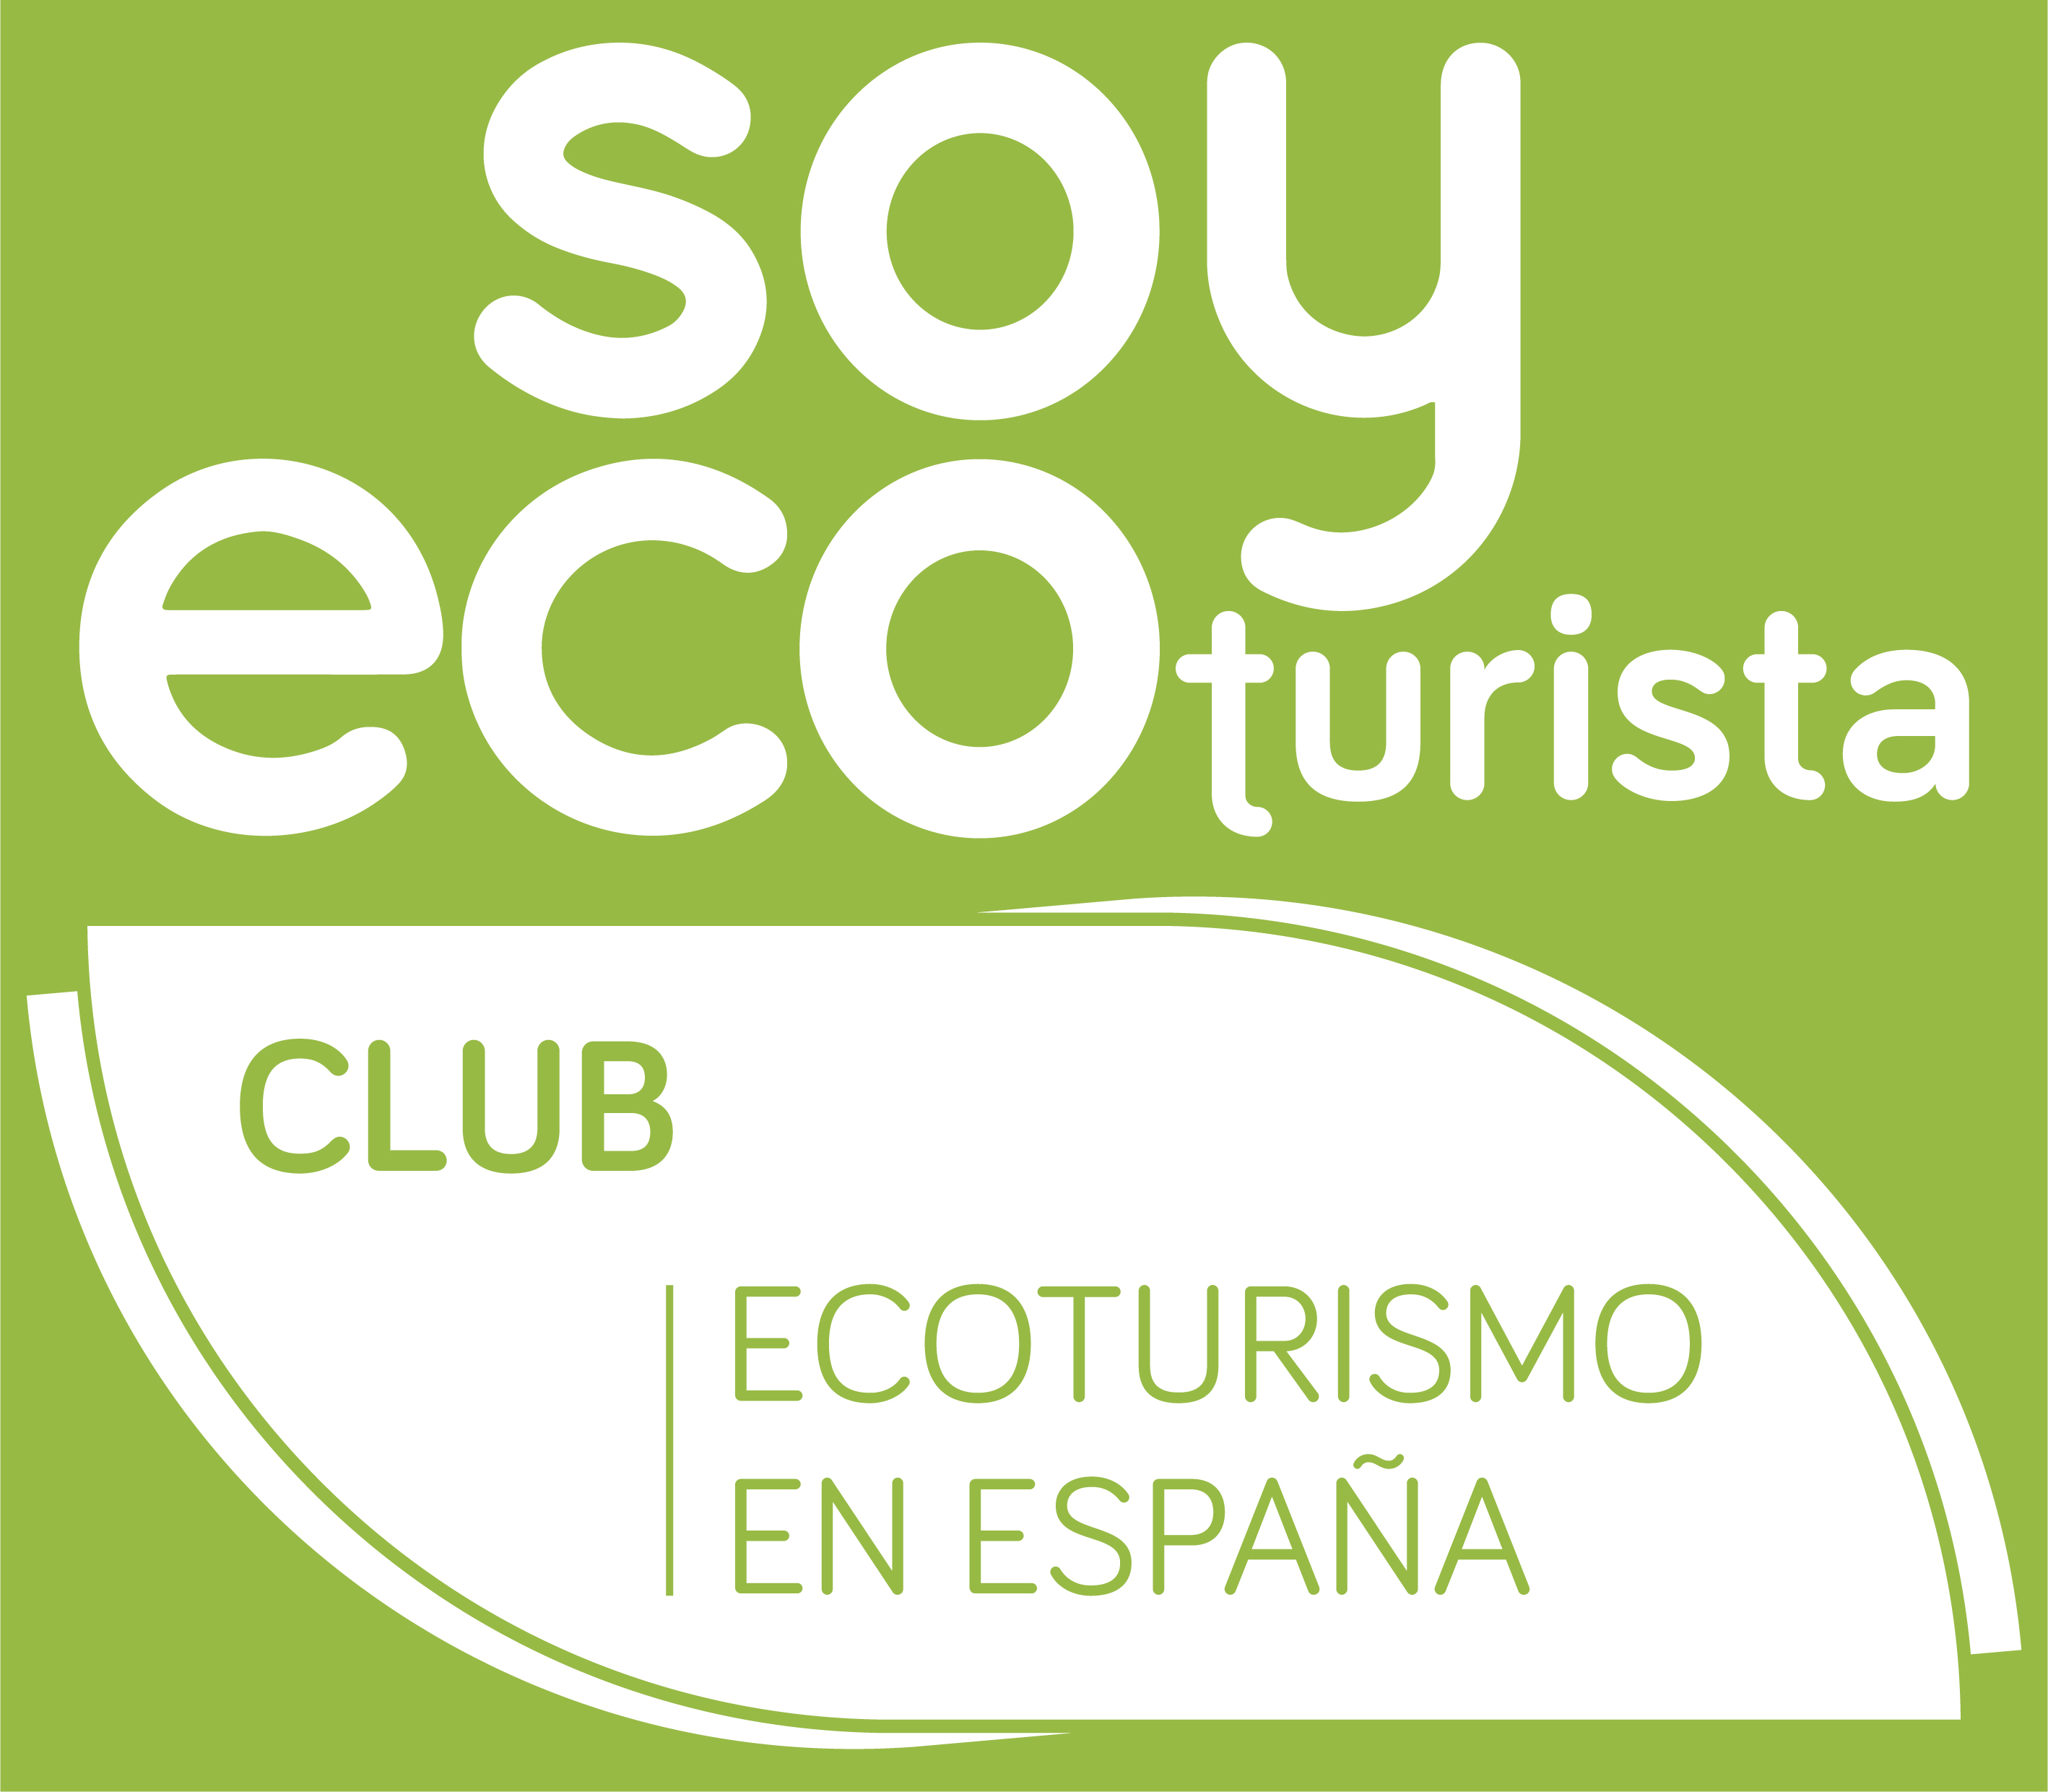 Club Ecoturismo en Espana